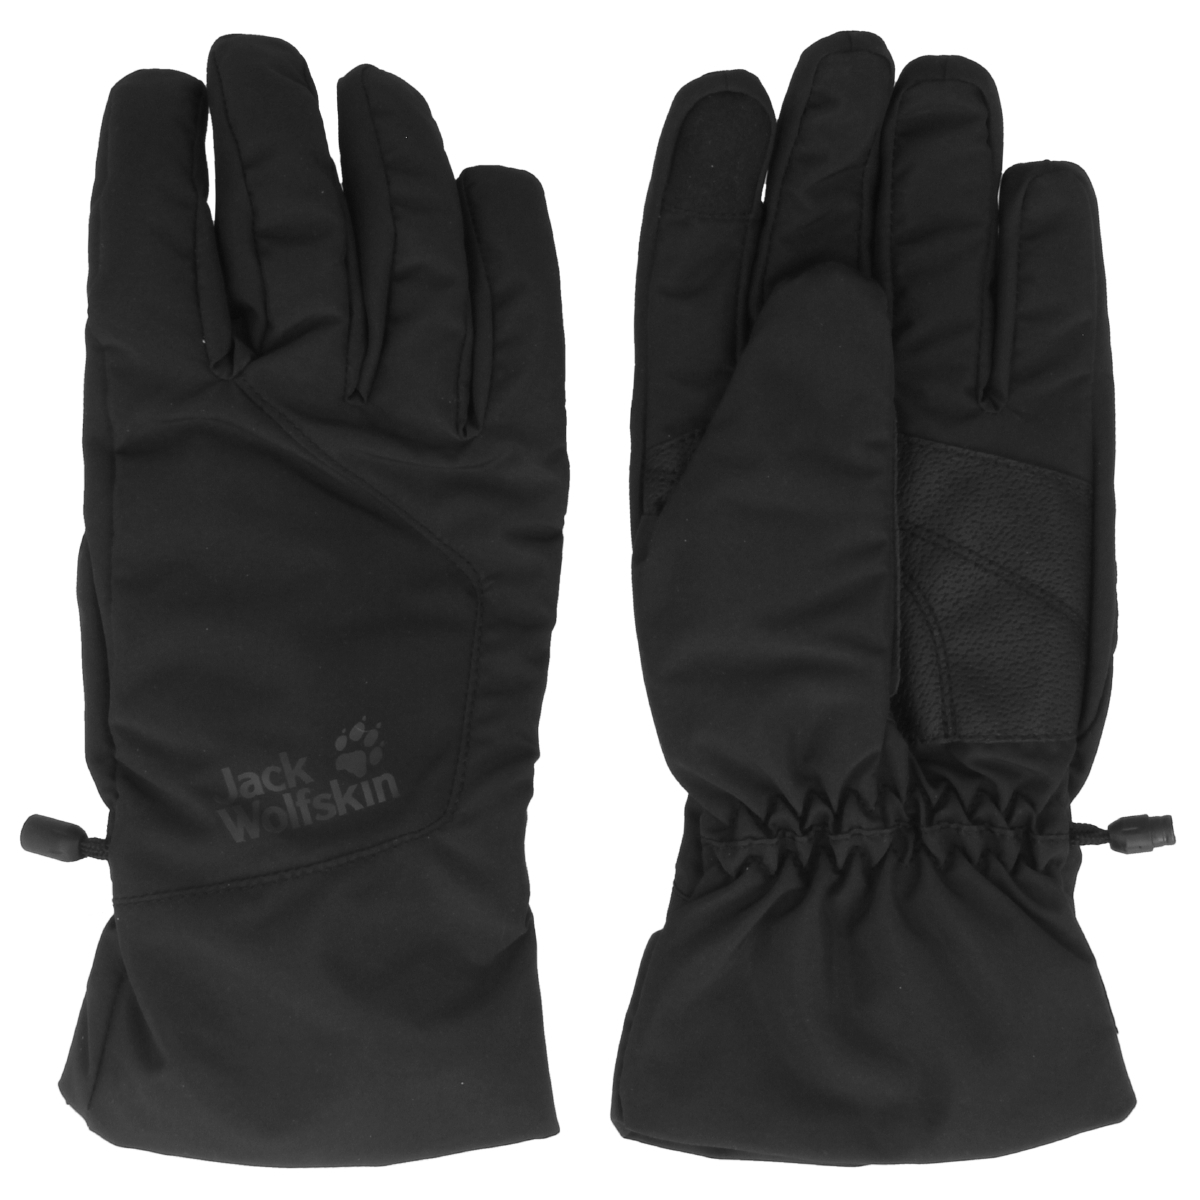 Jack Wolfskin Texapore Basics Glove Handschuhe schwarz